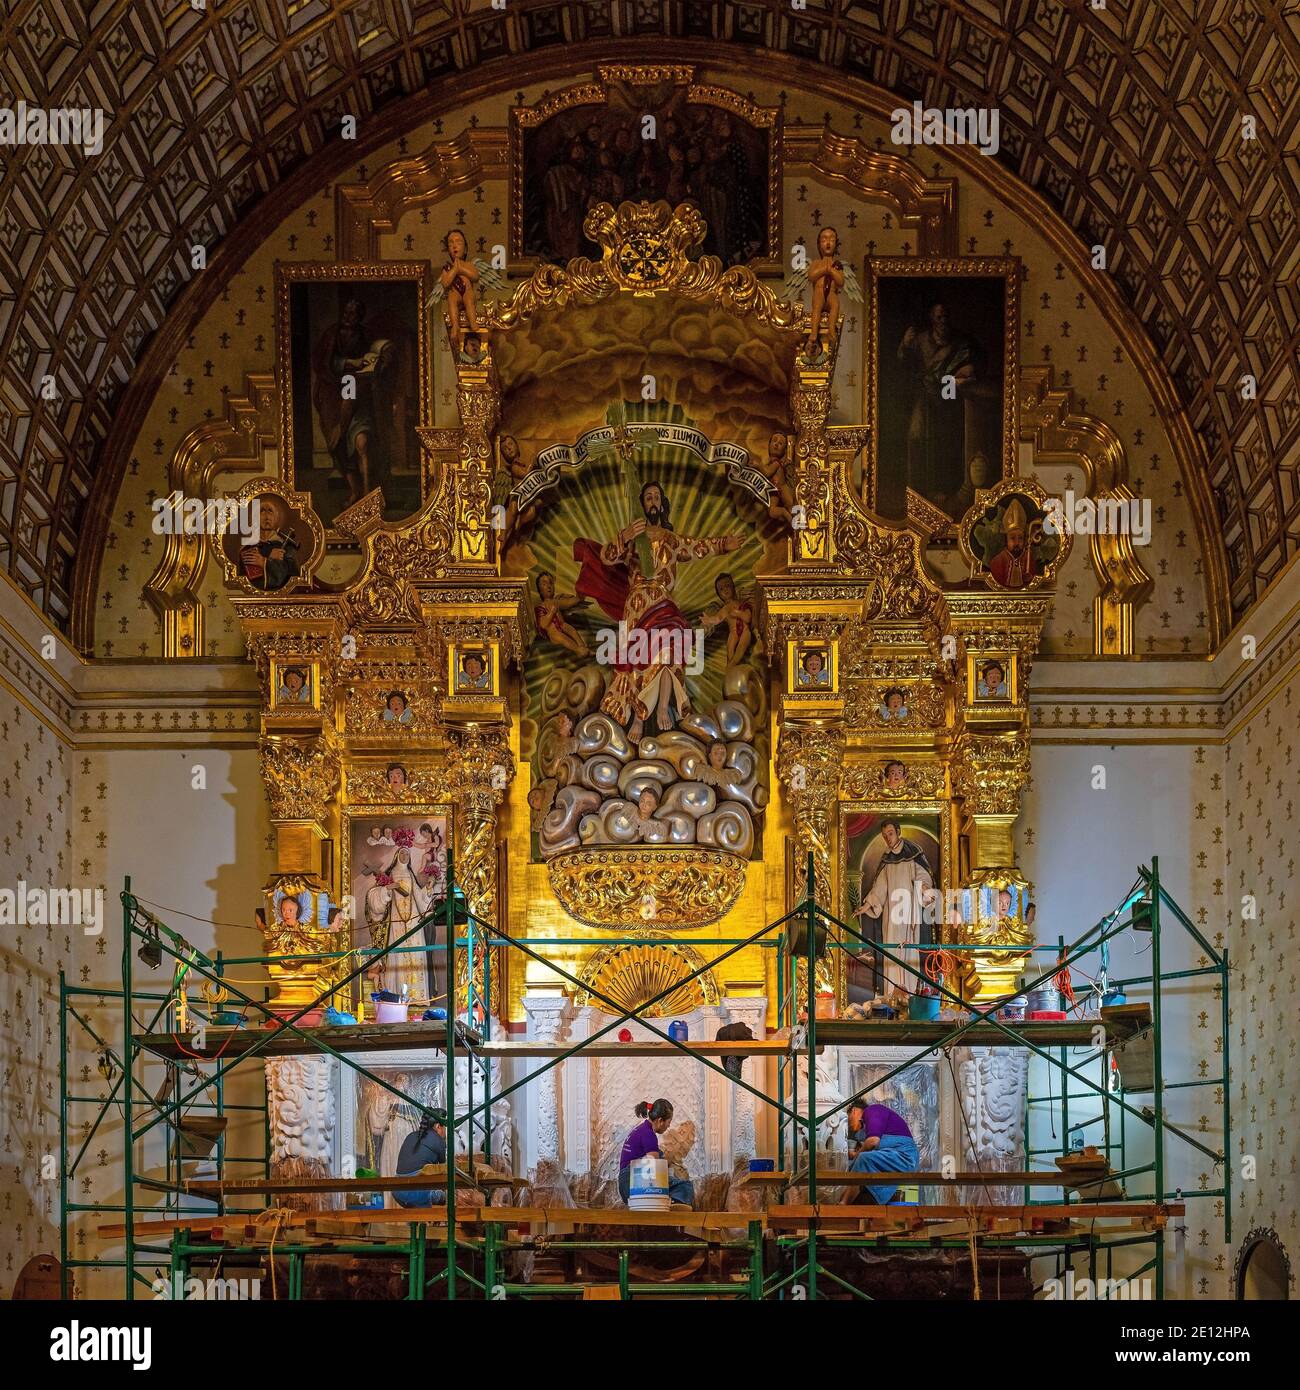 La gente messicana che fa il restauro su una pala d'altare in foglia d'oro in stile barocco nella chiesa e convento di Santo Domingo, Oaxaca, Messico. Foto Stock